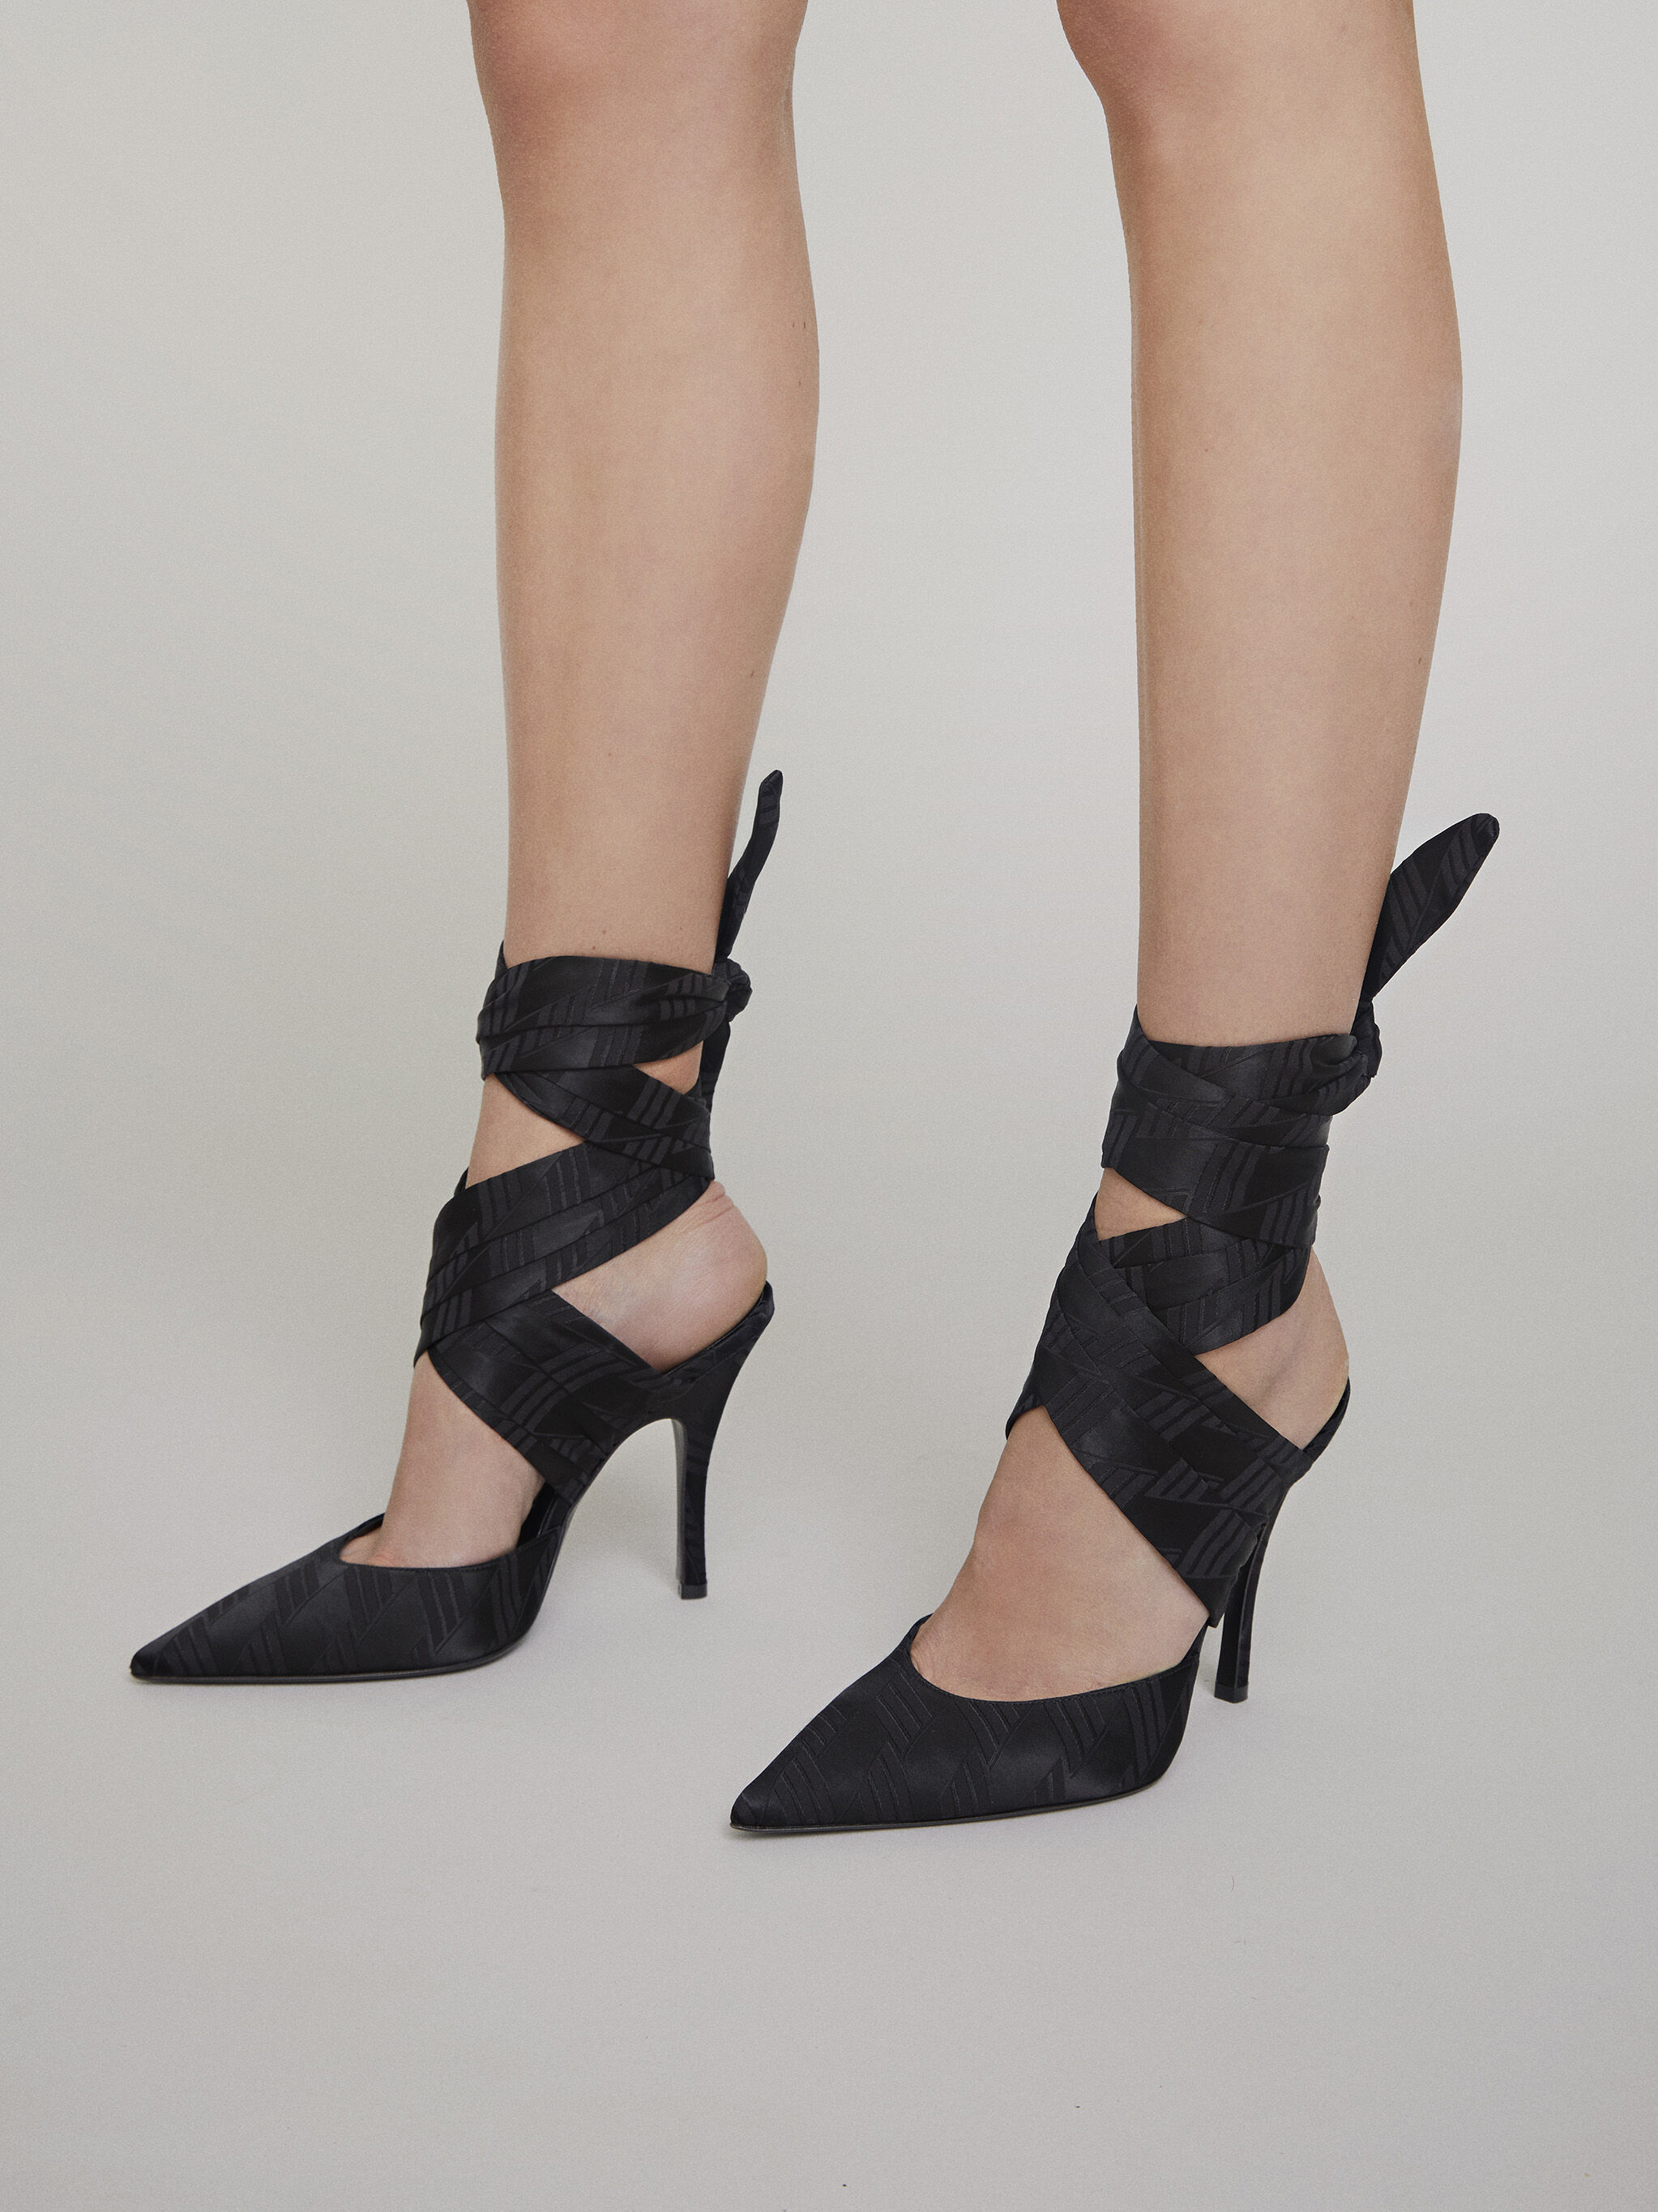 sale black heels